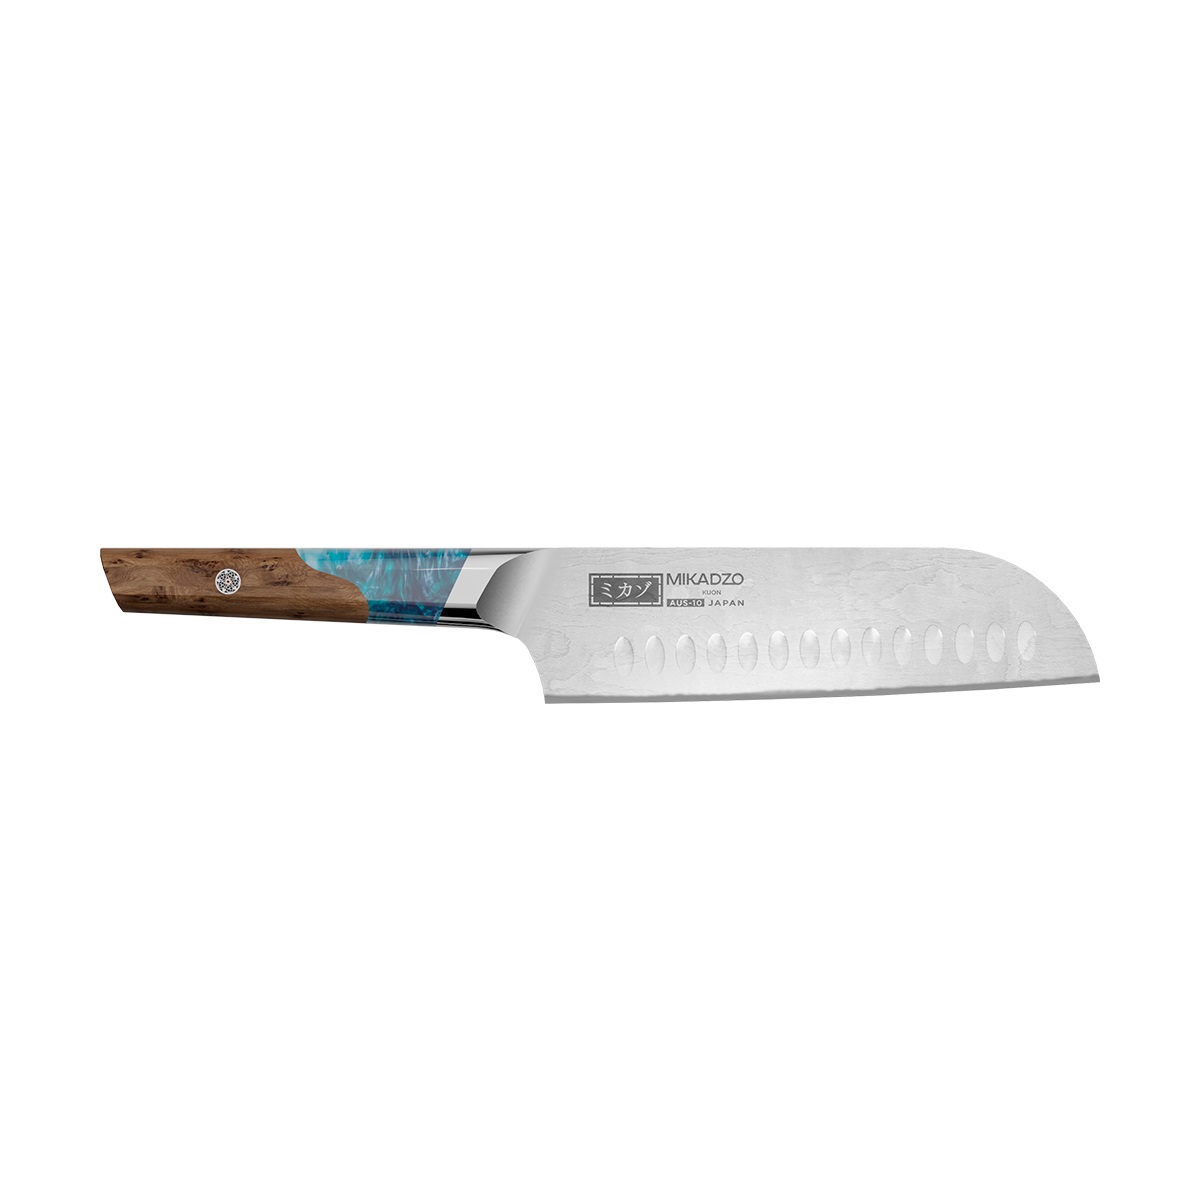 Кухонный нож Omoikiri Damascus Kuon 4992036 кухонный гаджет ownland m 791 5 в 1